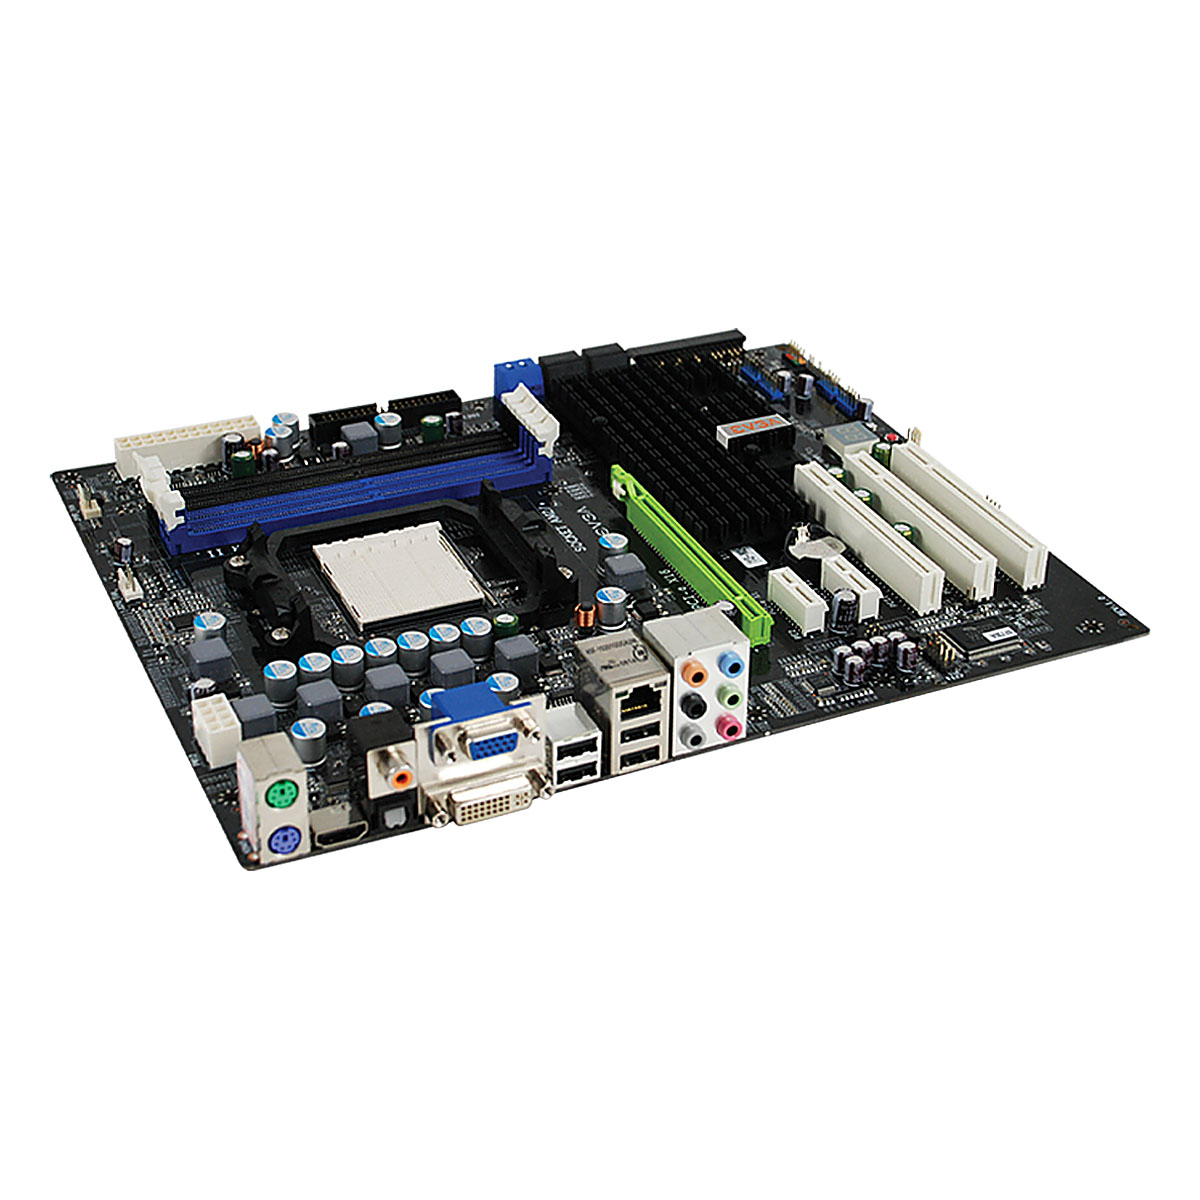 Immagine pubblicata in relazione al seguente contenuto: EVGA commercializza la motherboard nForce 730a per cpu AM2+ | Nome immagine: news9075_2.jpg